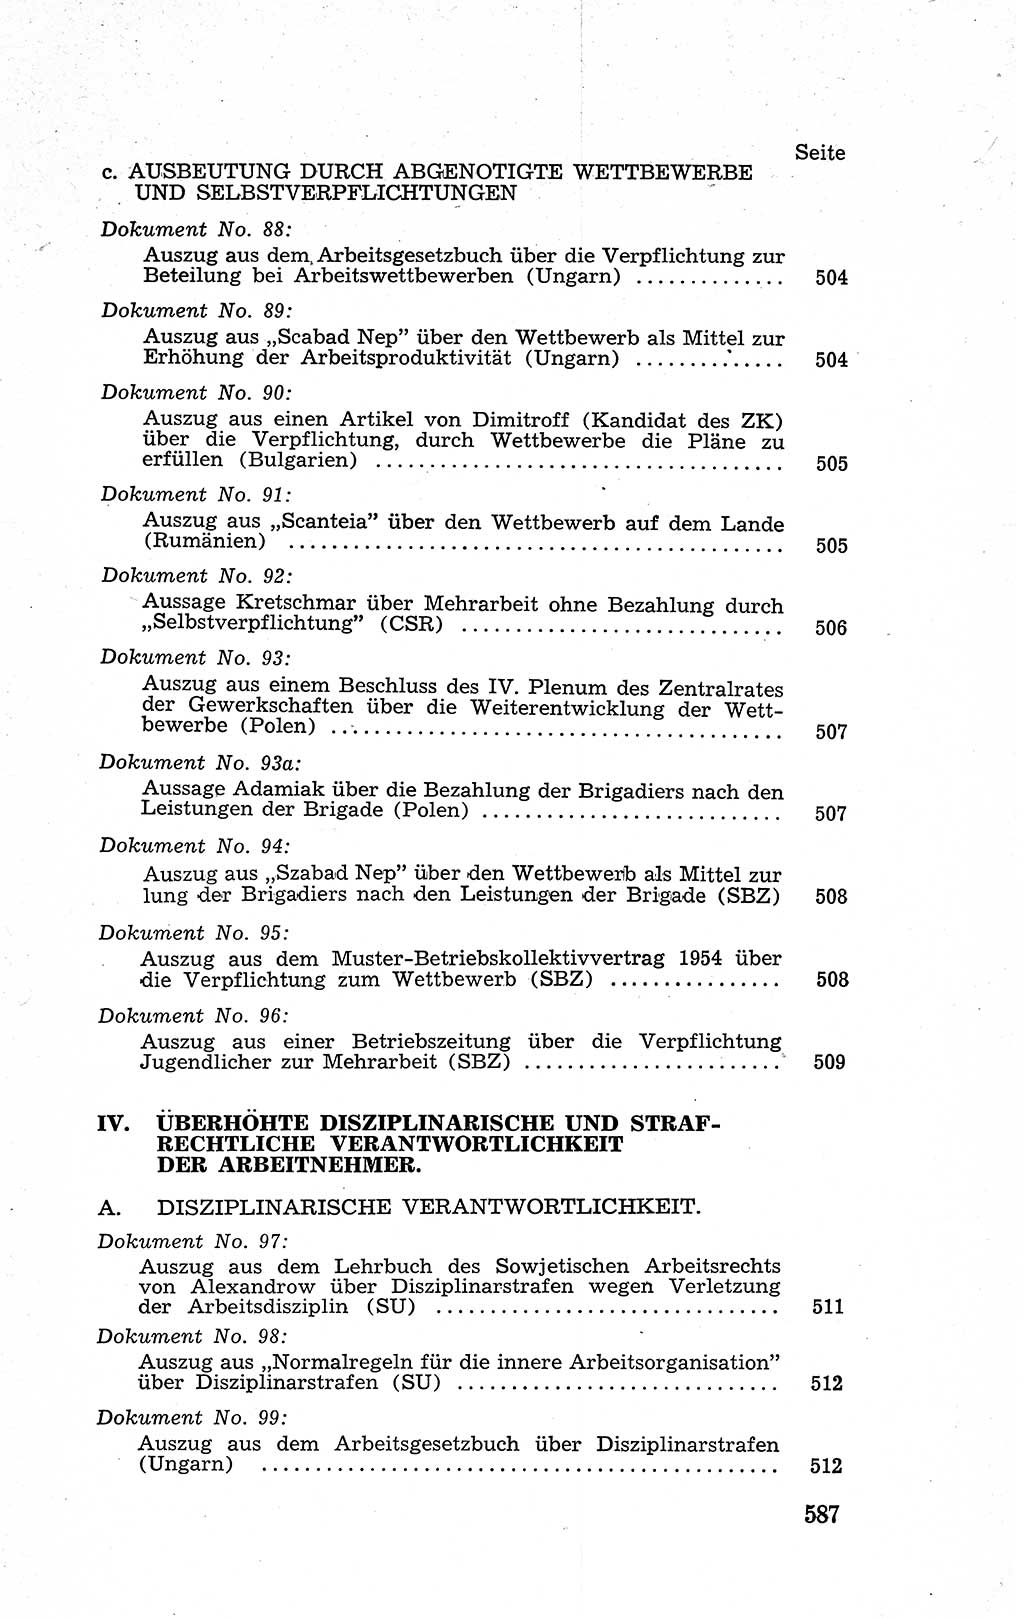 Recht in Fesseln, Dokumente, Internationale Juristen-Kommission [Bundesrepublik Deutschland (BRD)] 1955, Seite 587 (R. Dok. IJK BRD 1955, S. 587)